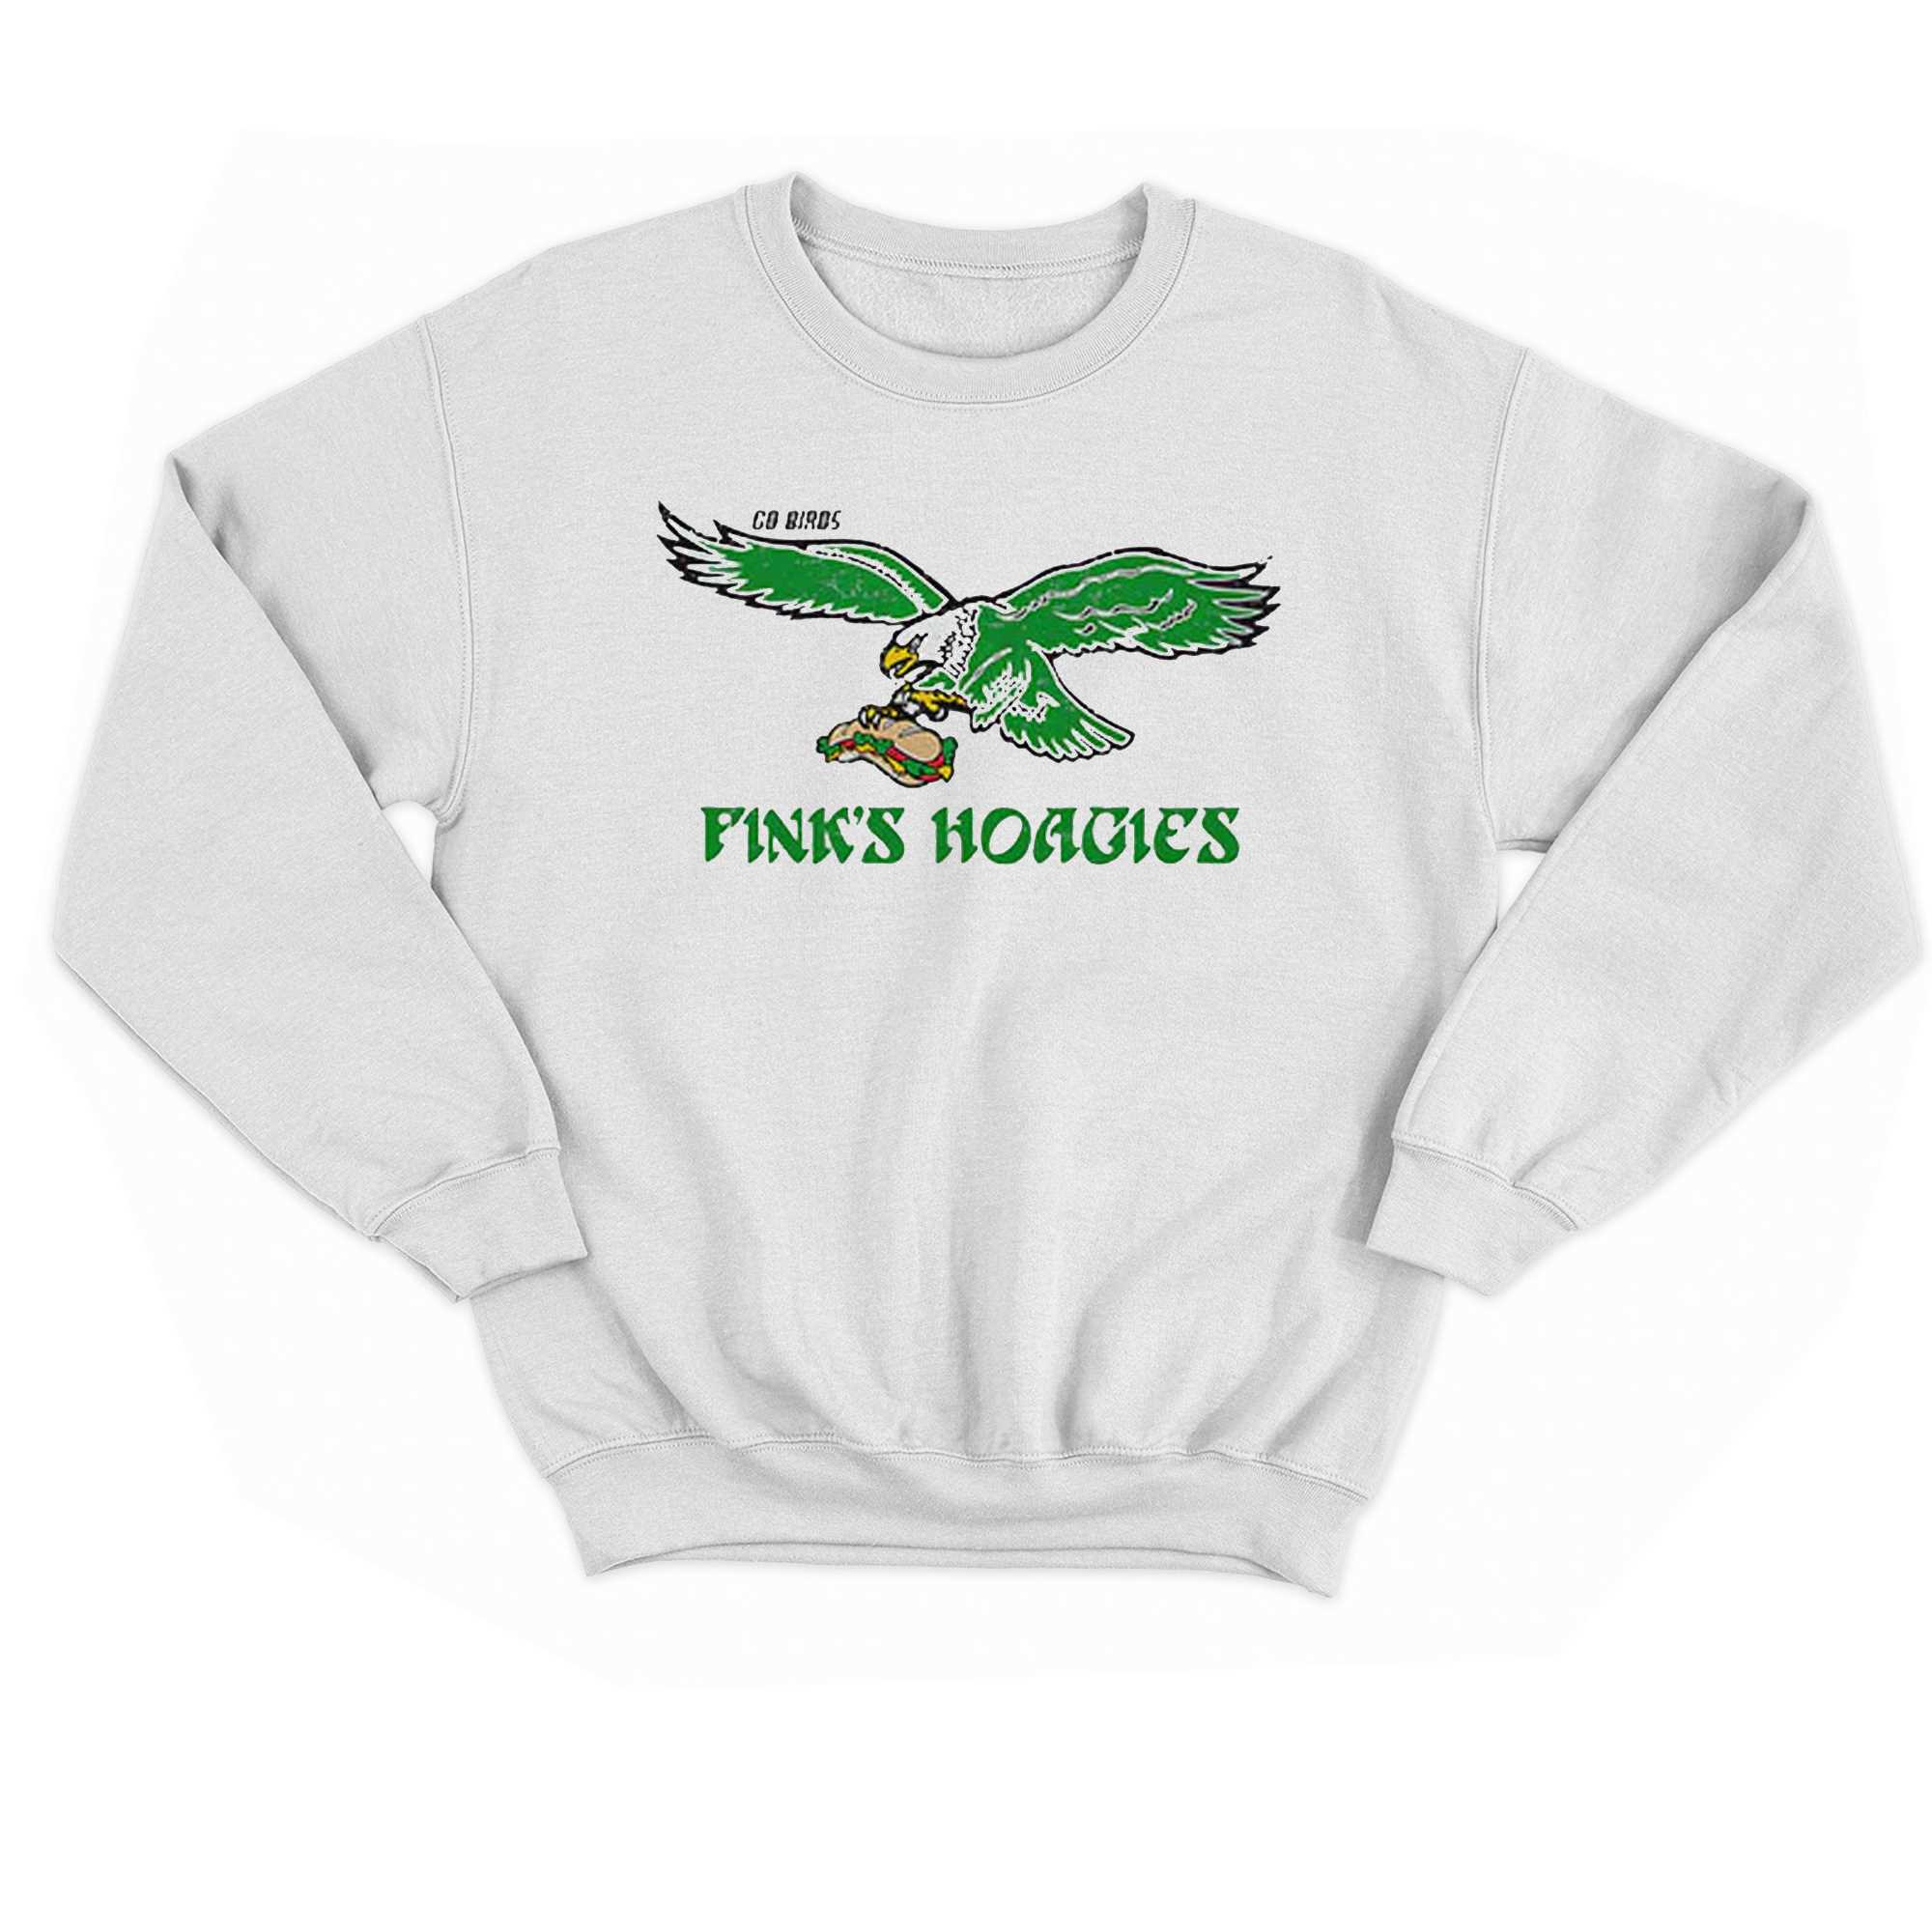 Go Birds Finks T-shirt Hoodie 